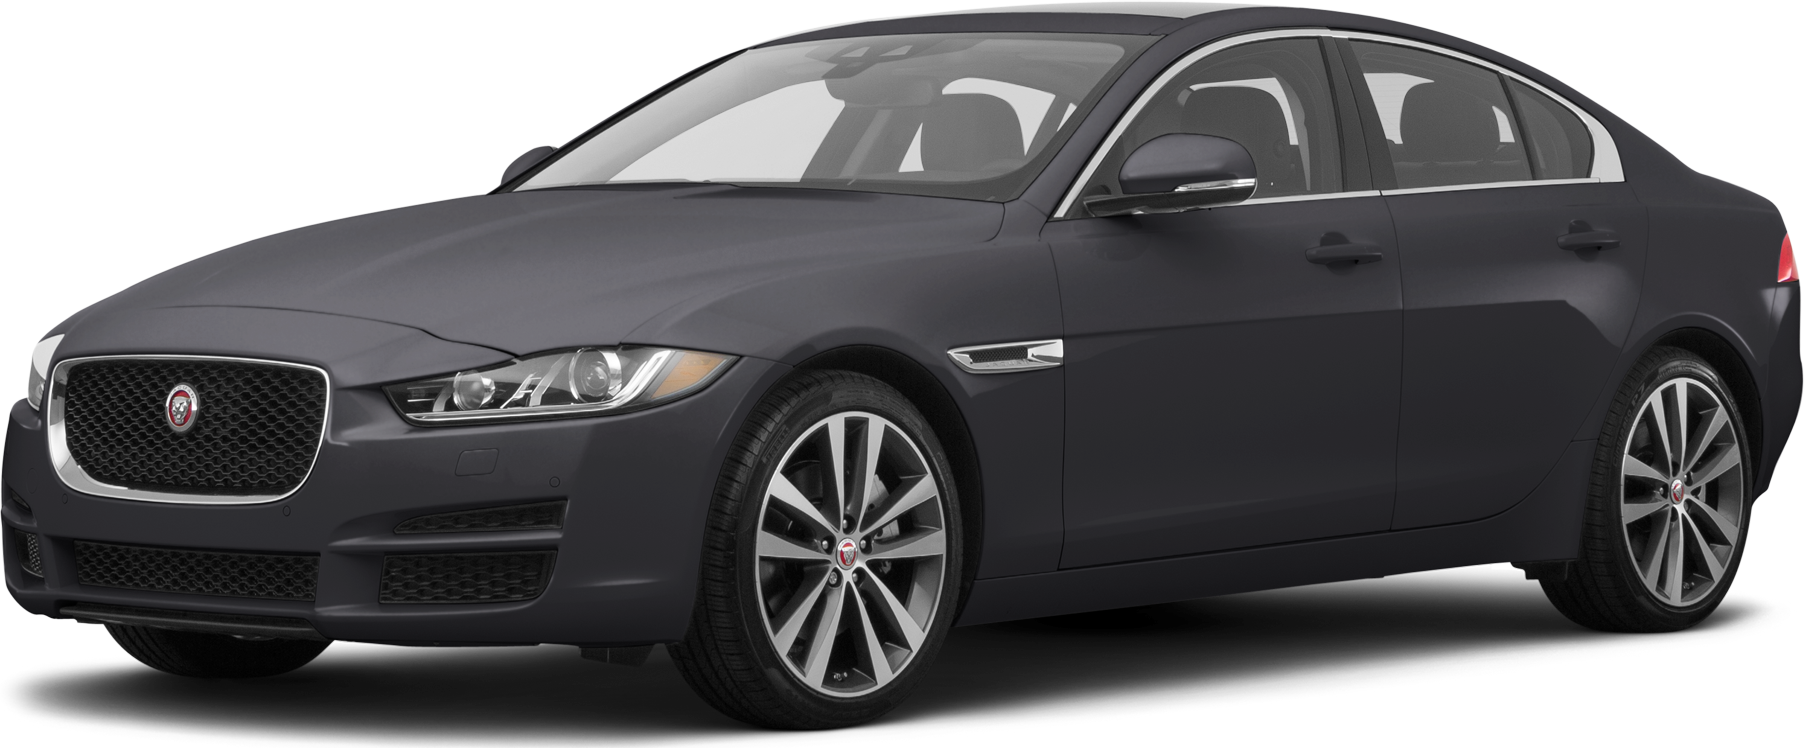 File:Jaguar XE S registered January 2017 2995cc.jpg - Wikipedia